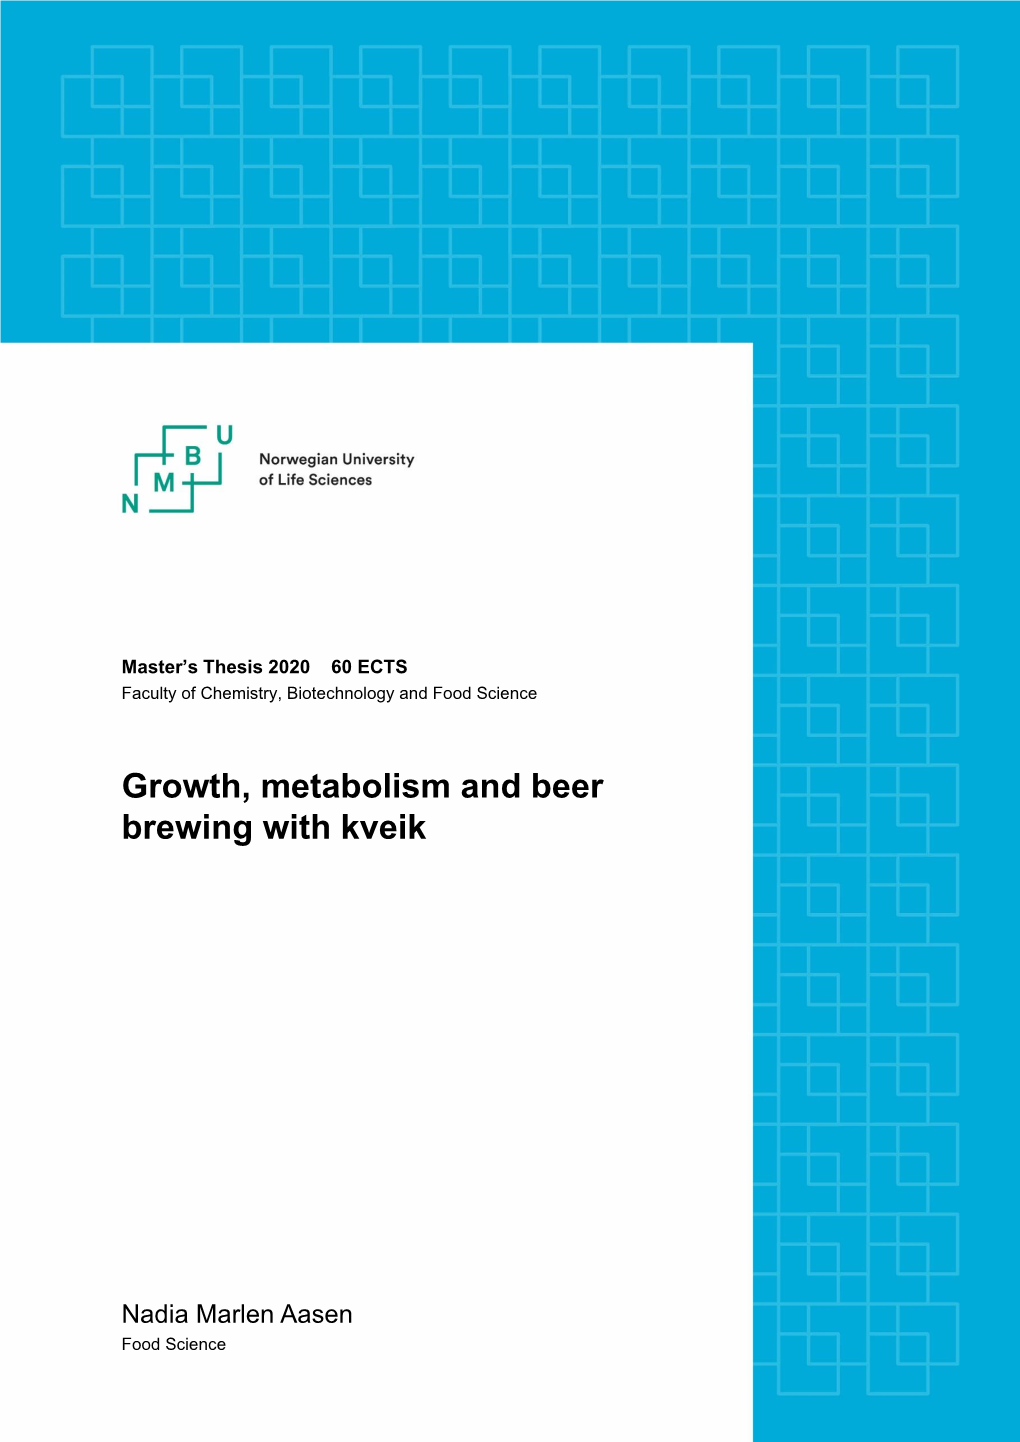 Growth, Metabolism and Beer Brewing with Kveik